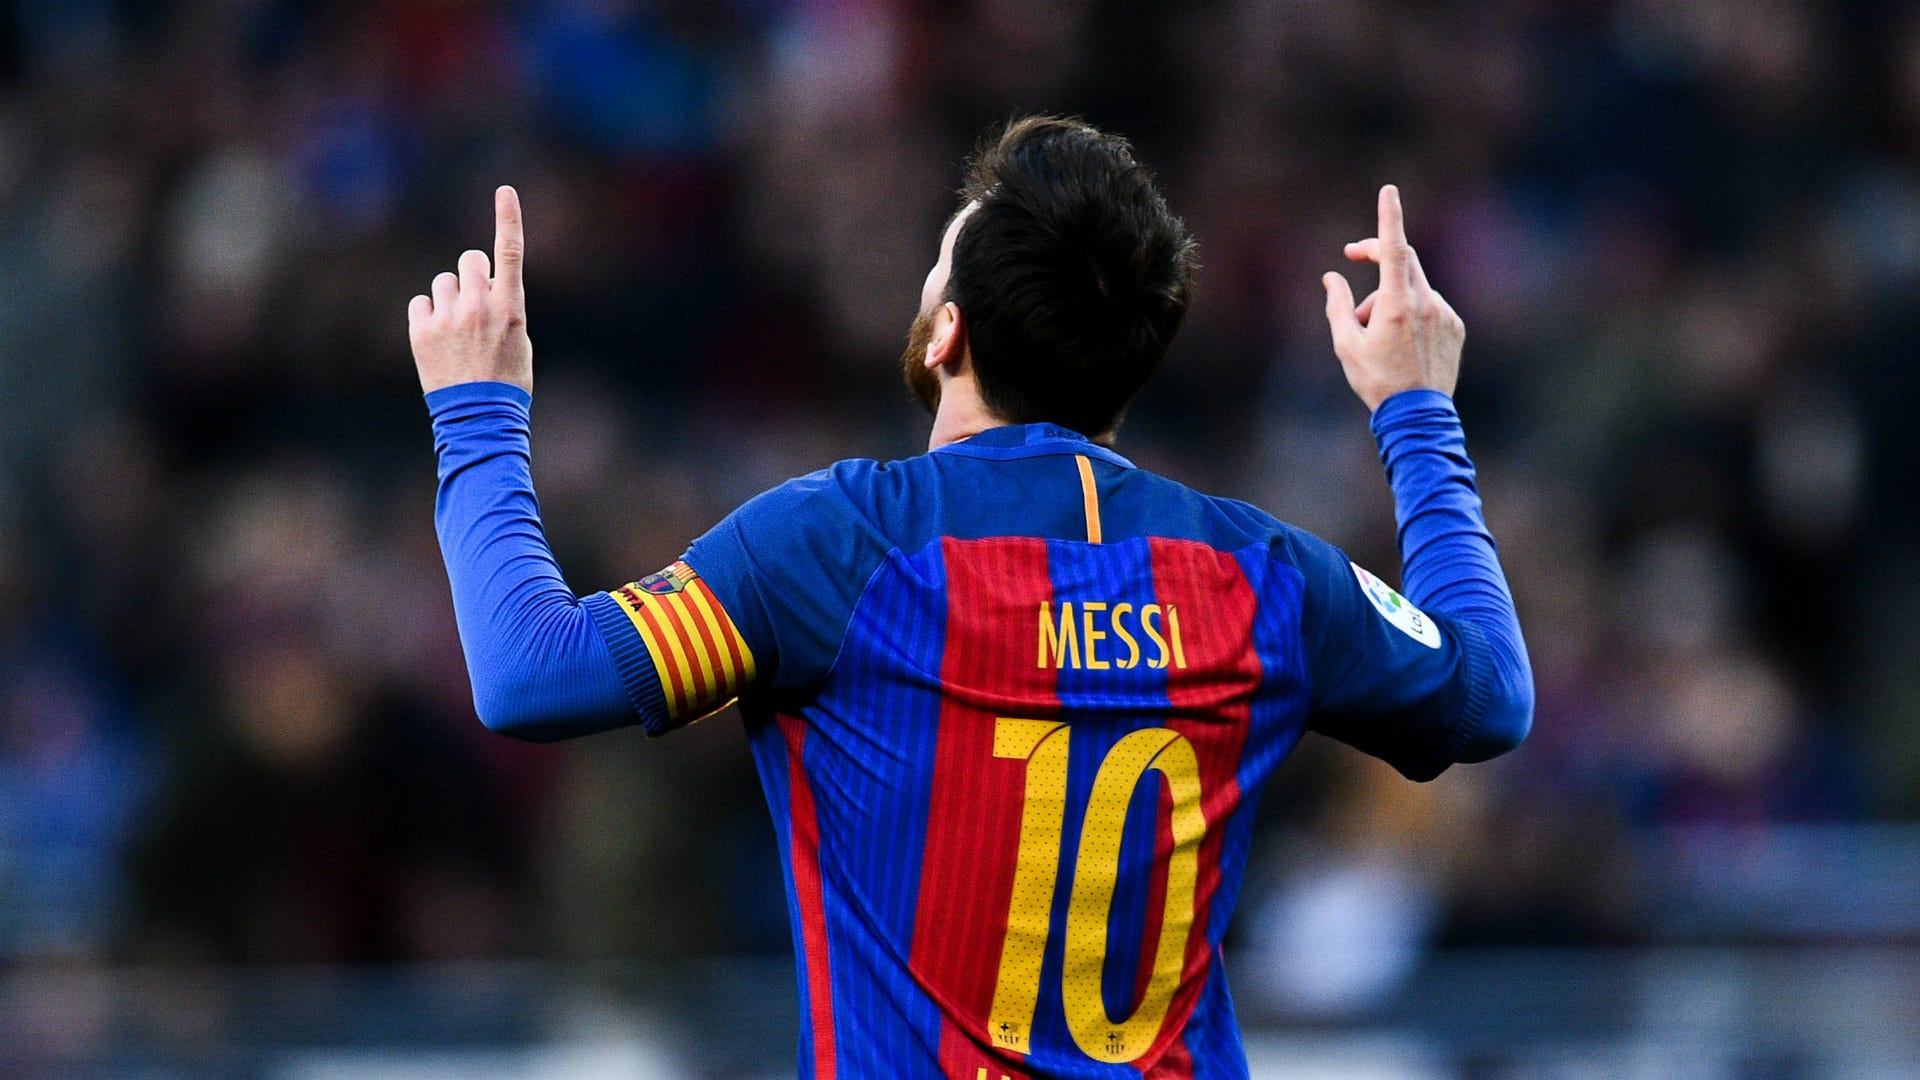 Các fan hâm mộ bóng đá hãy chuẩn bị sẵn sàng để tải các hình nền Lionel Messi 4K miễn phí và đắm chìm trong không gian của ngôi sao bóng đá Argentina. Cùng thích thức màu sắc sống động và đầy tinh tế của những hình ảnh Lionel Messi đẹp nhất trên màn hình của bạn!